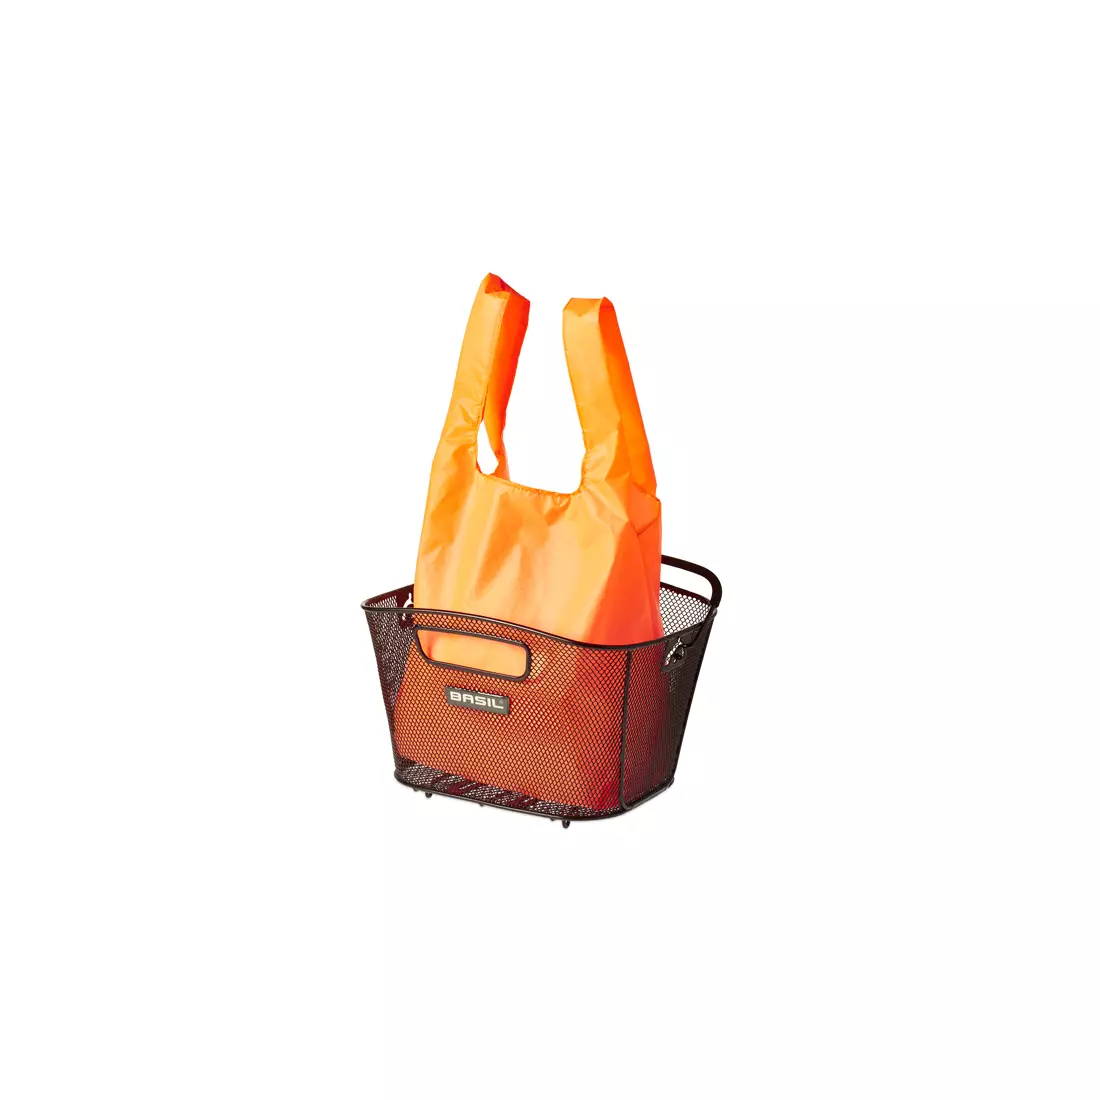 Einkaufstasche BASIL KEEP SHOPPER orange neon BAS-50453